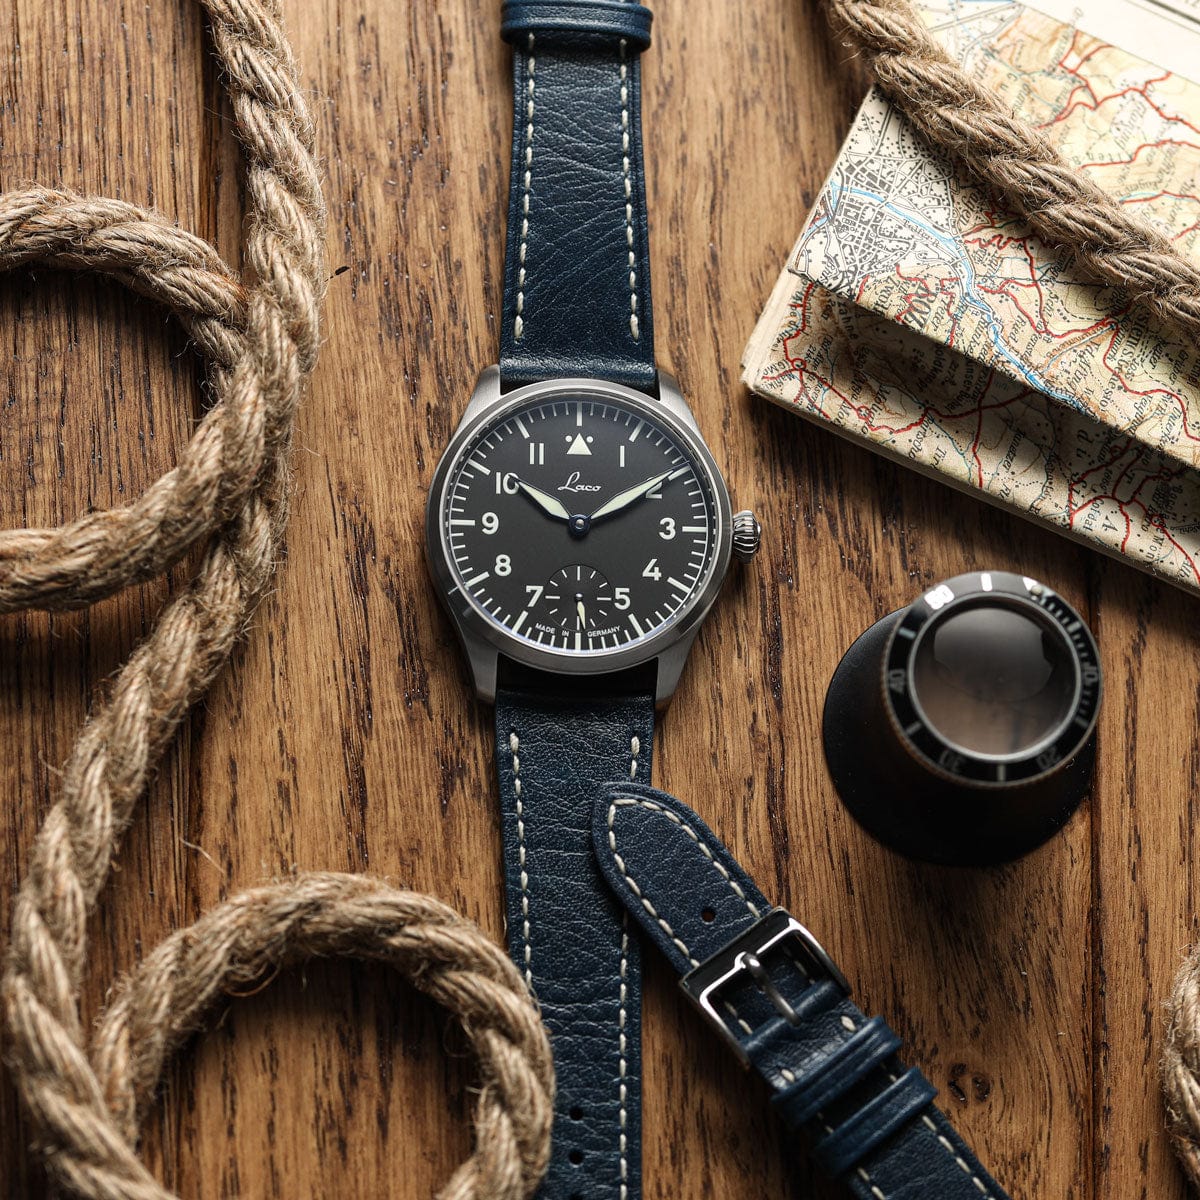 Castile Handmade Spanish Leather Watch Strap - Dark Blue